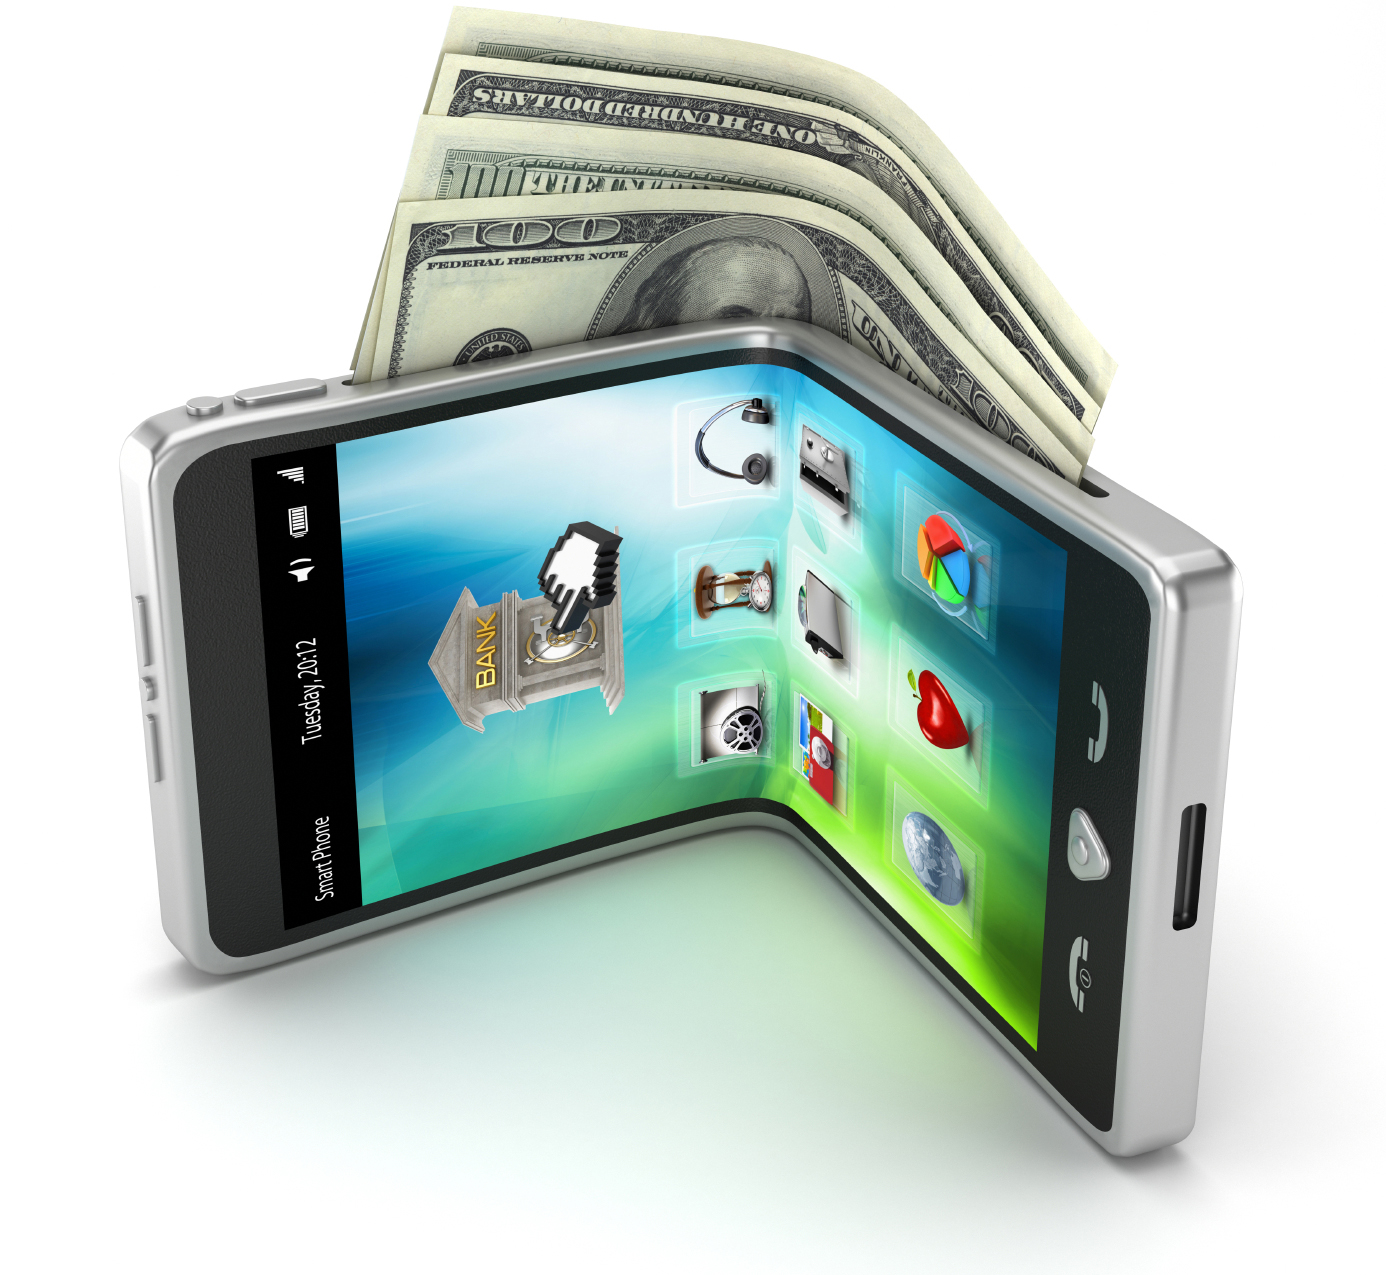 Paying Bills Through Mobile Wallet